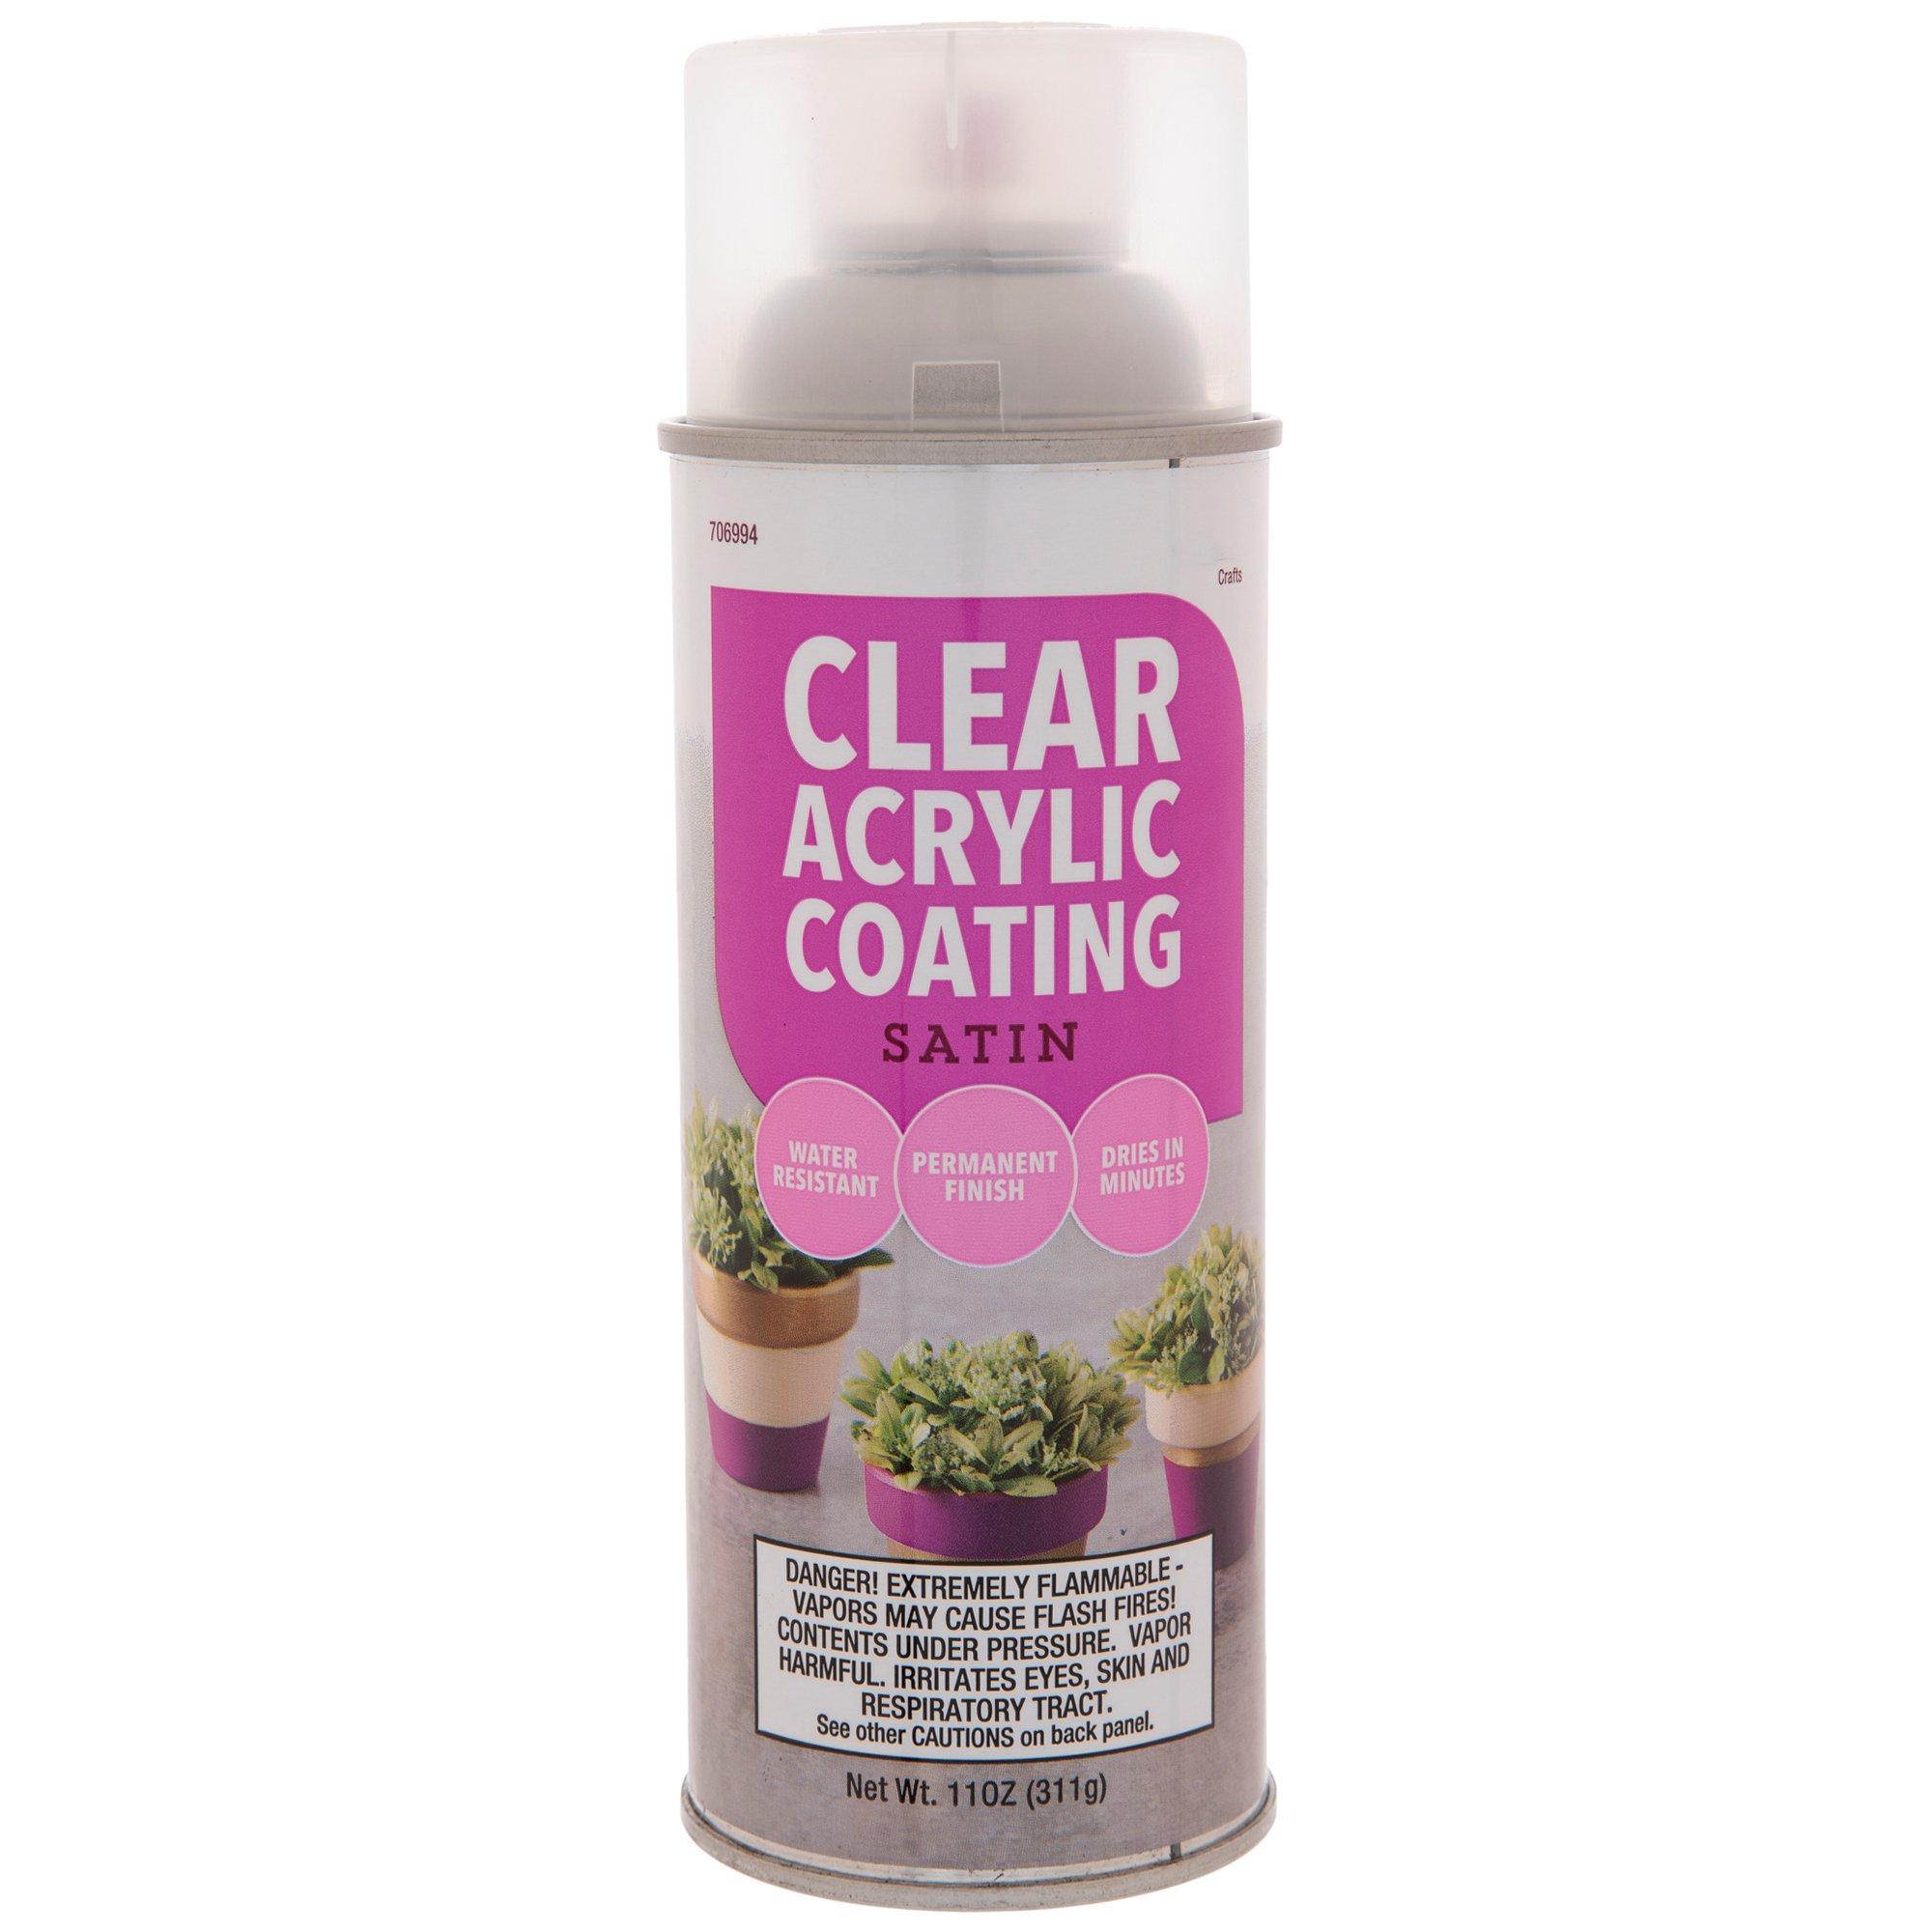 Satin Clear Acrylic Coating Spray Paint